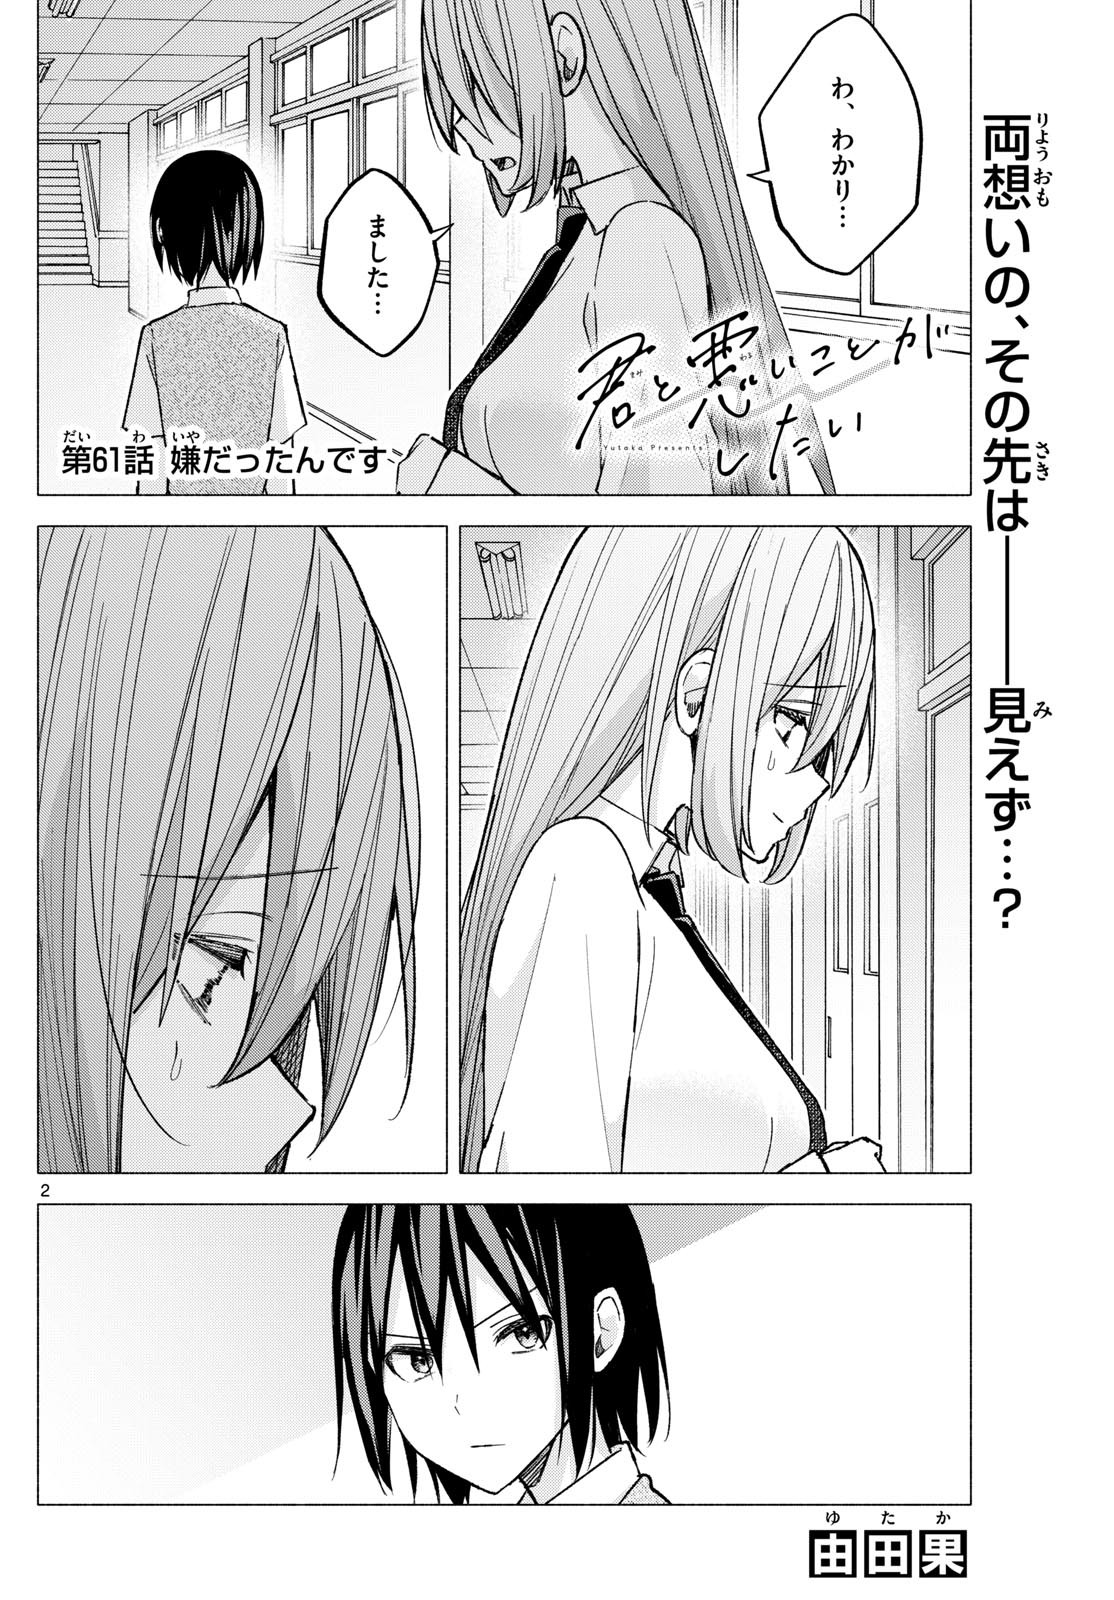 Kimi to Warui Koto ga Shitai - Chapter 061 - Page 2